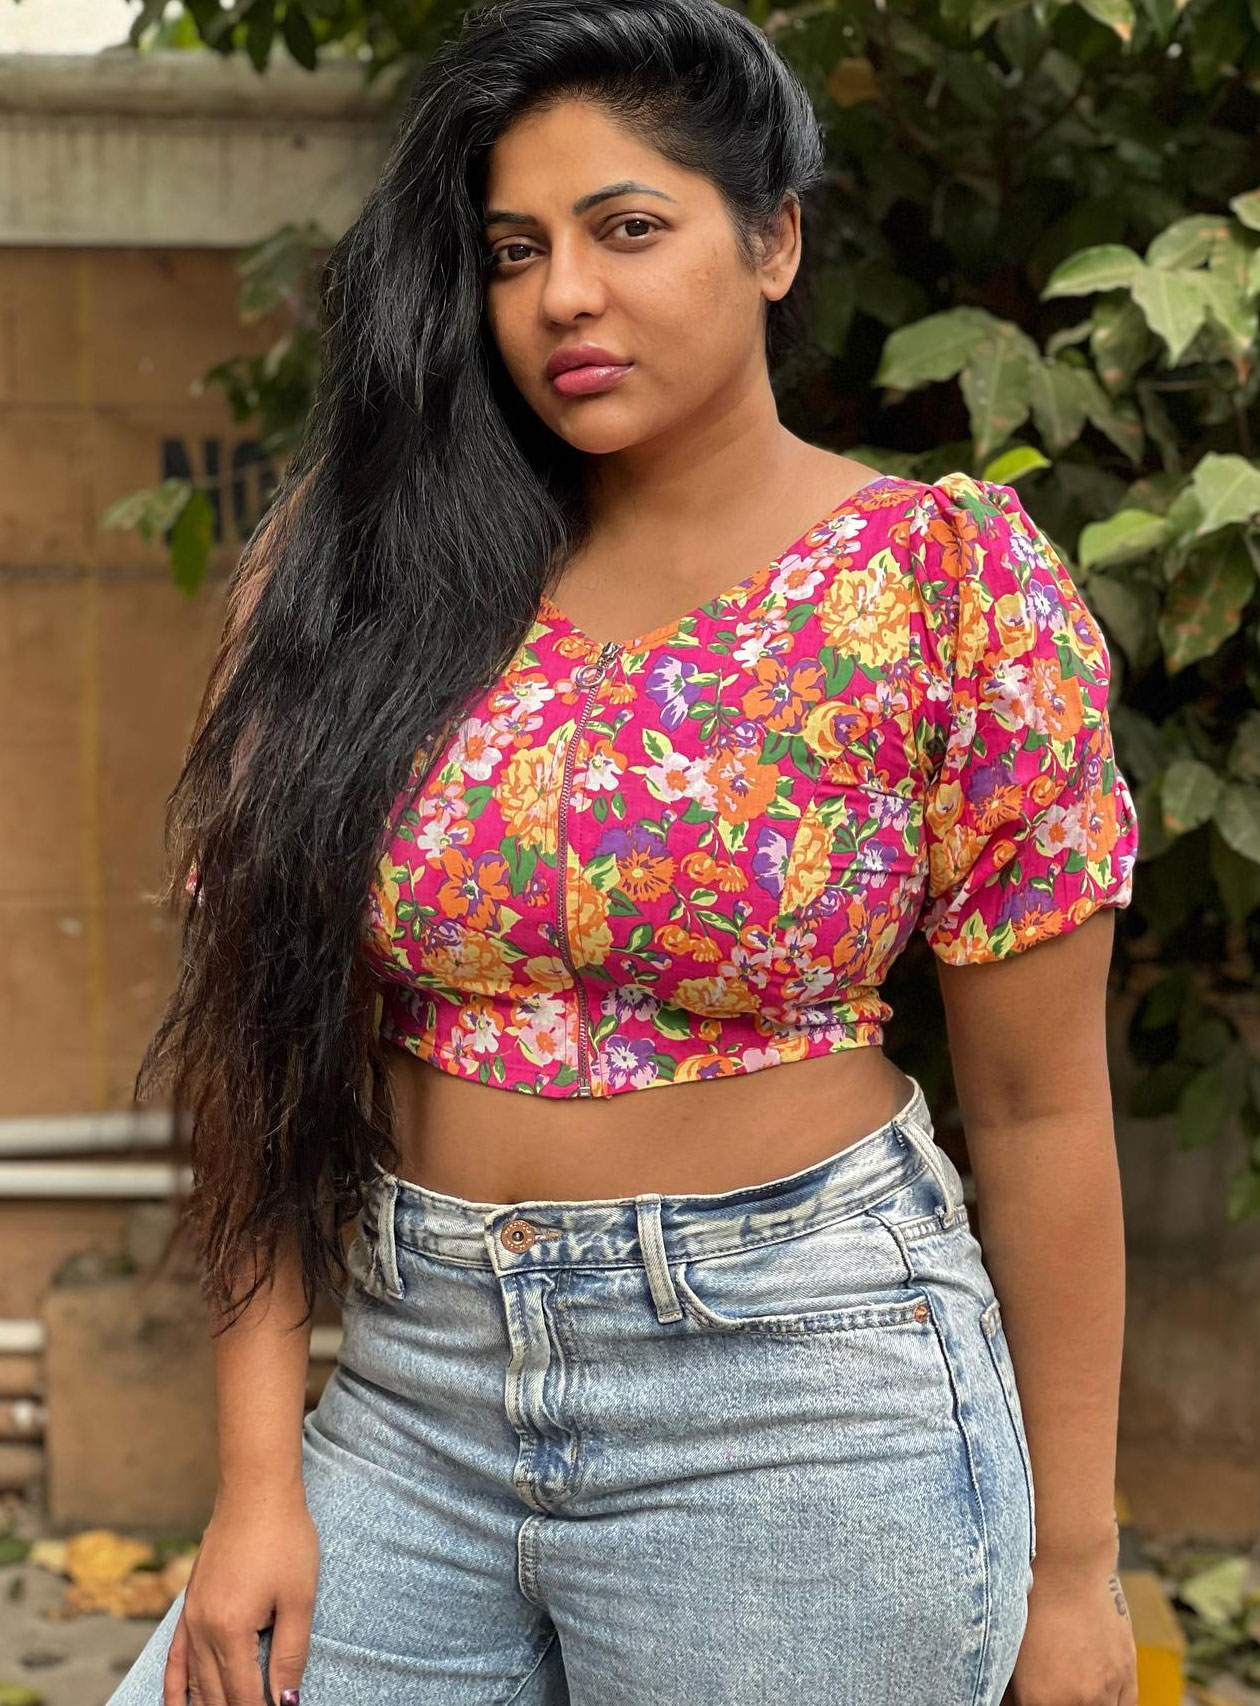 Reshma big boobs